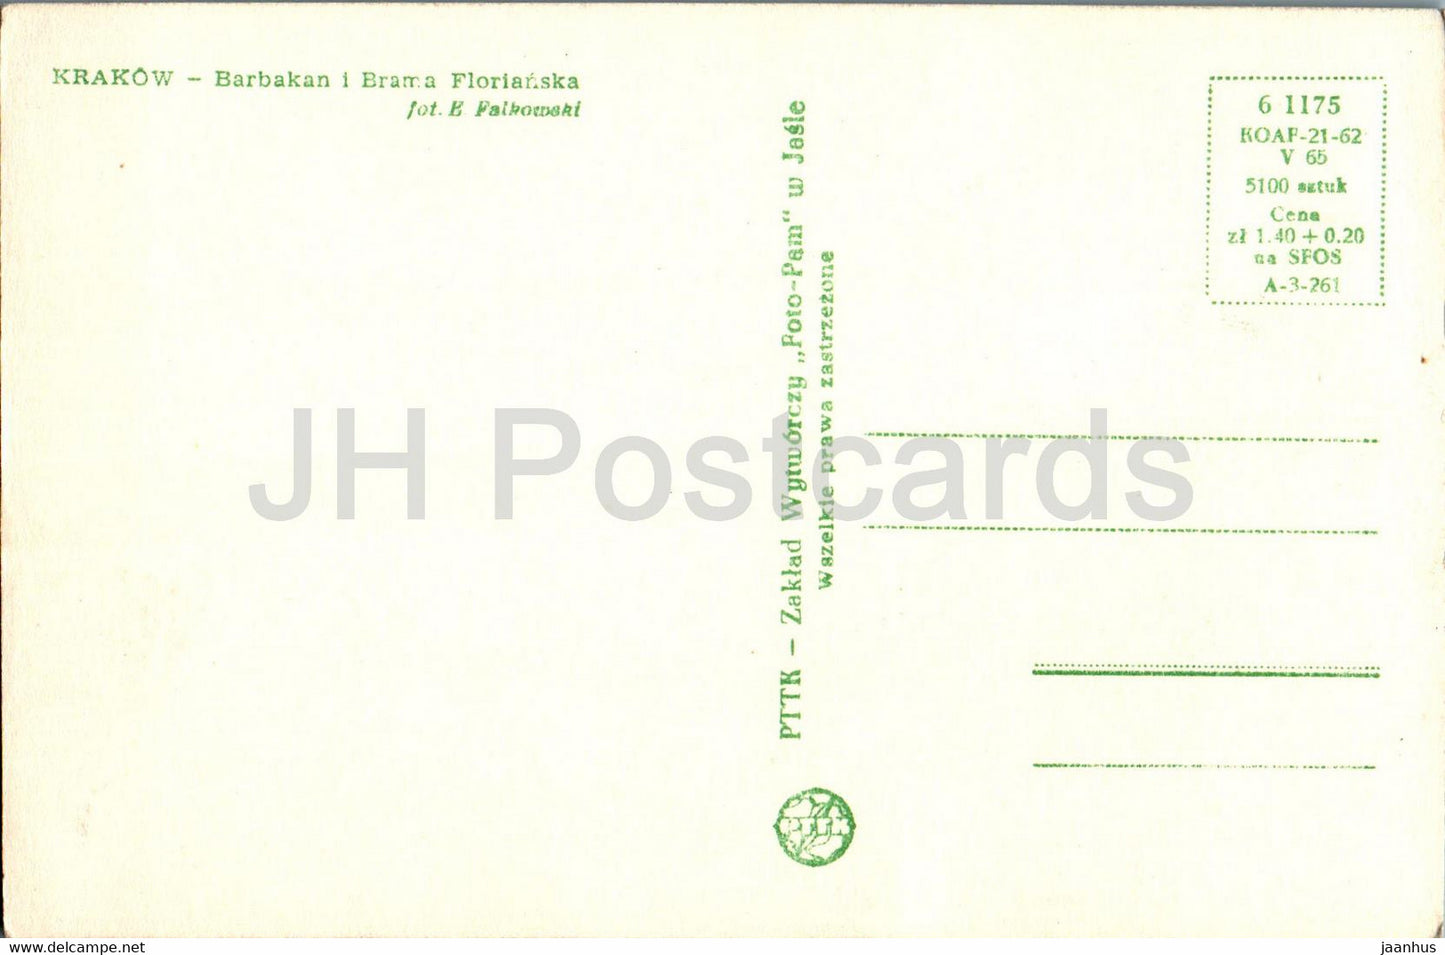 Krakow - Barbakan i Brama Florianska - old postcard - Poland - unused